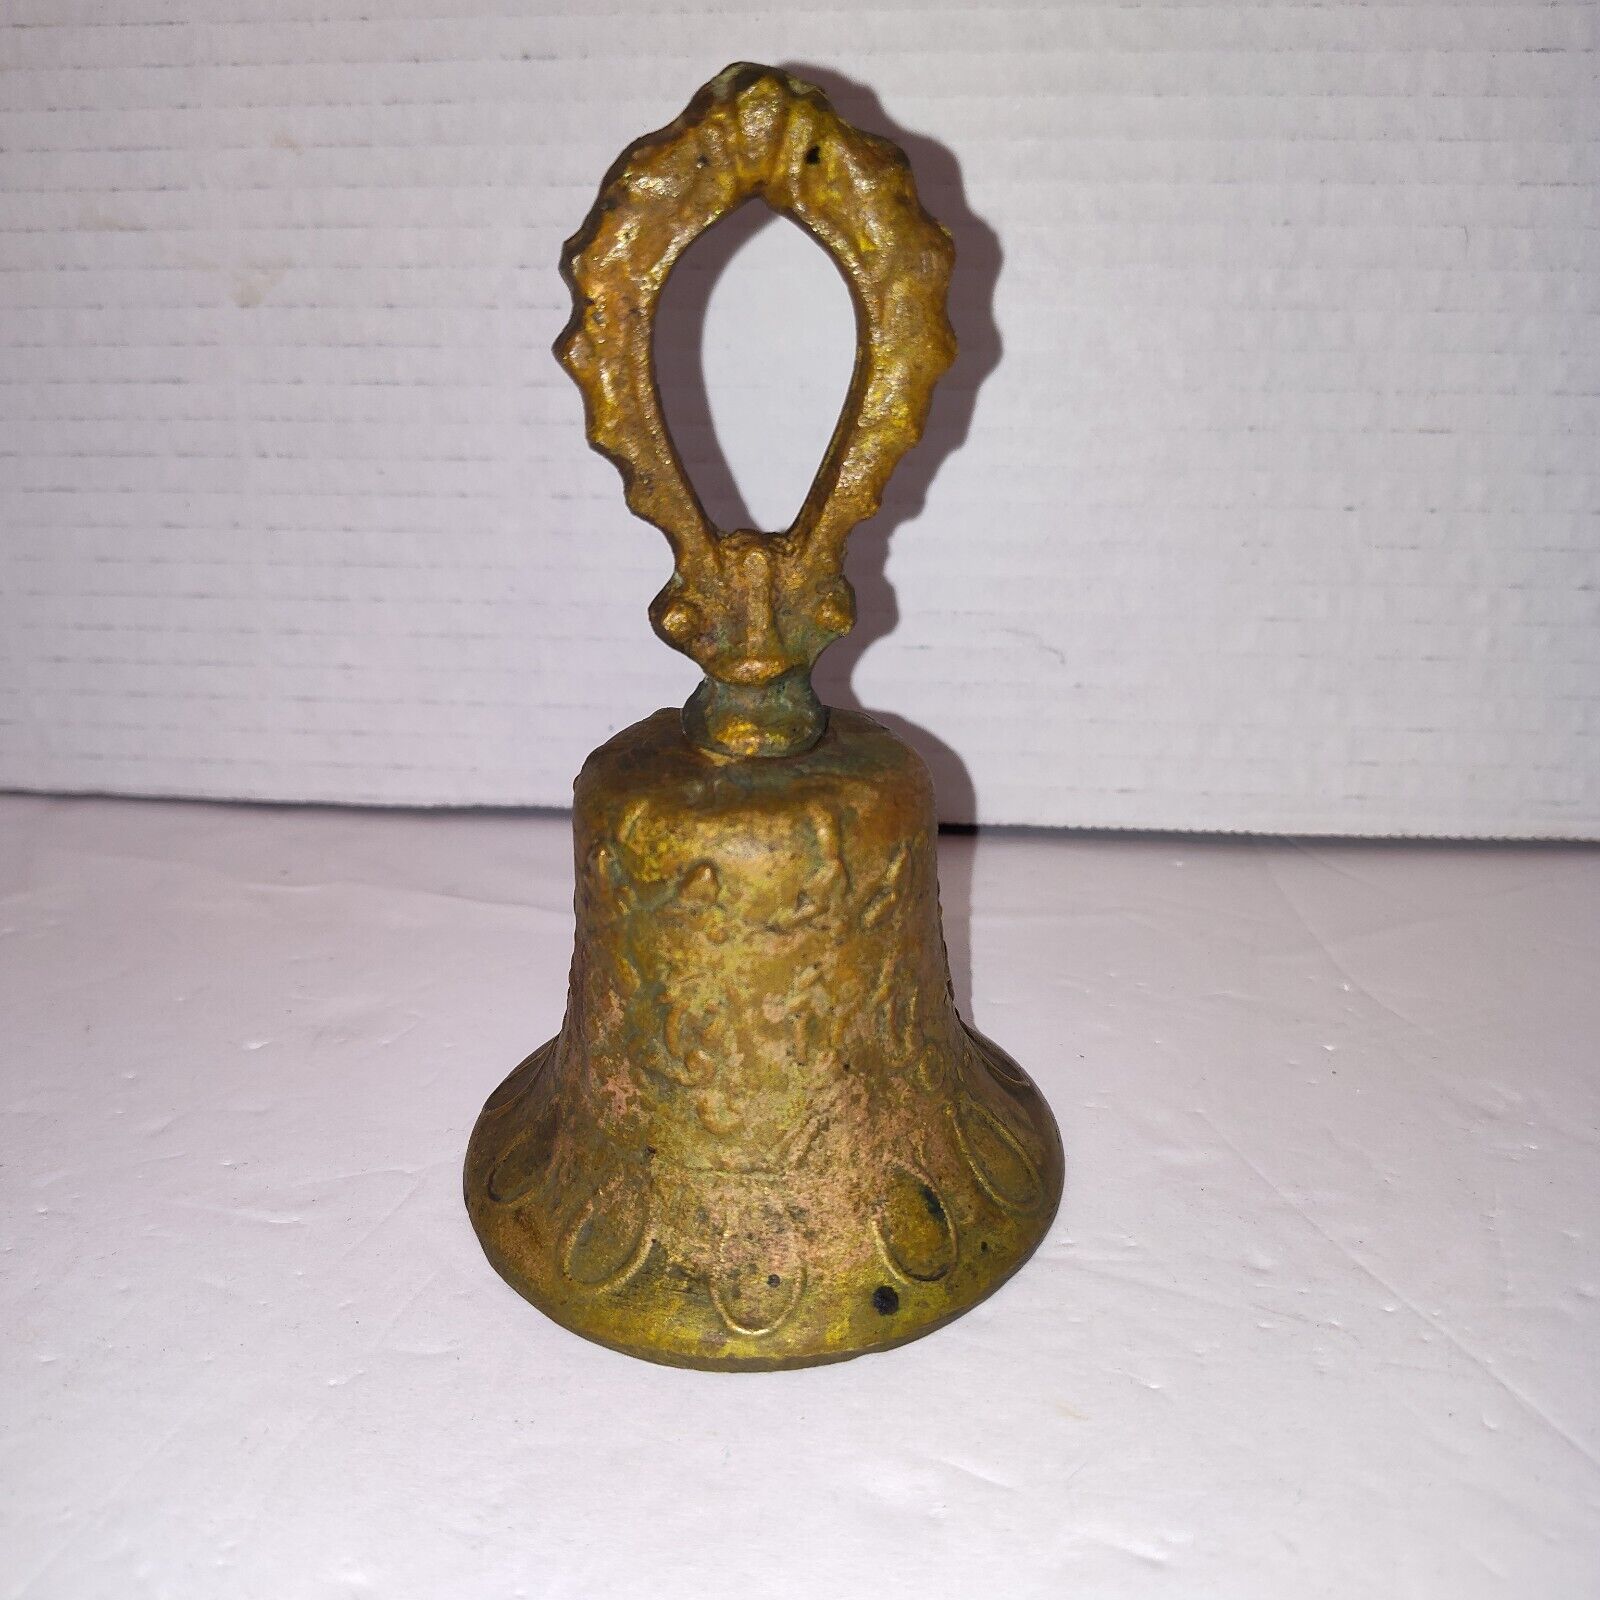 Vintage Cast Metal Ornate Bell 5 1/2